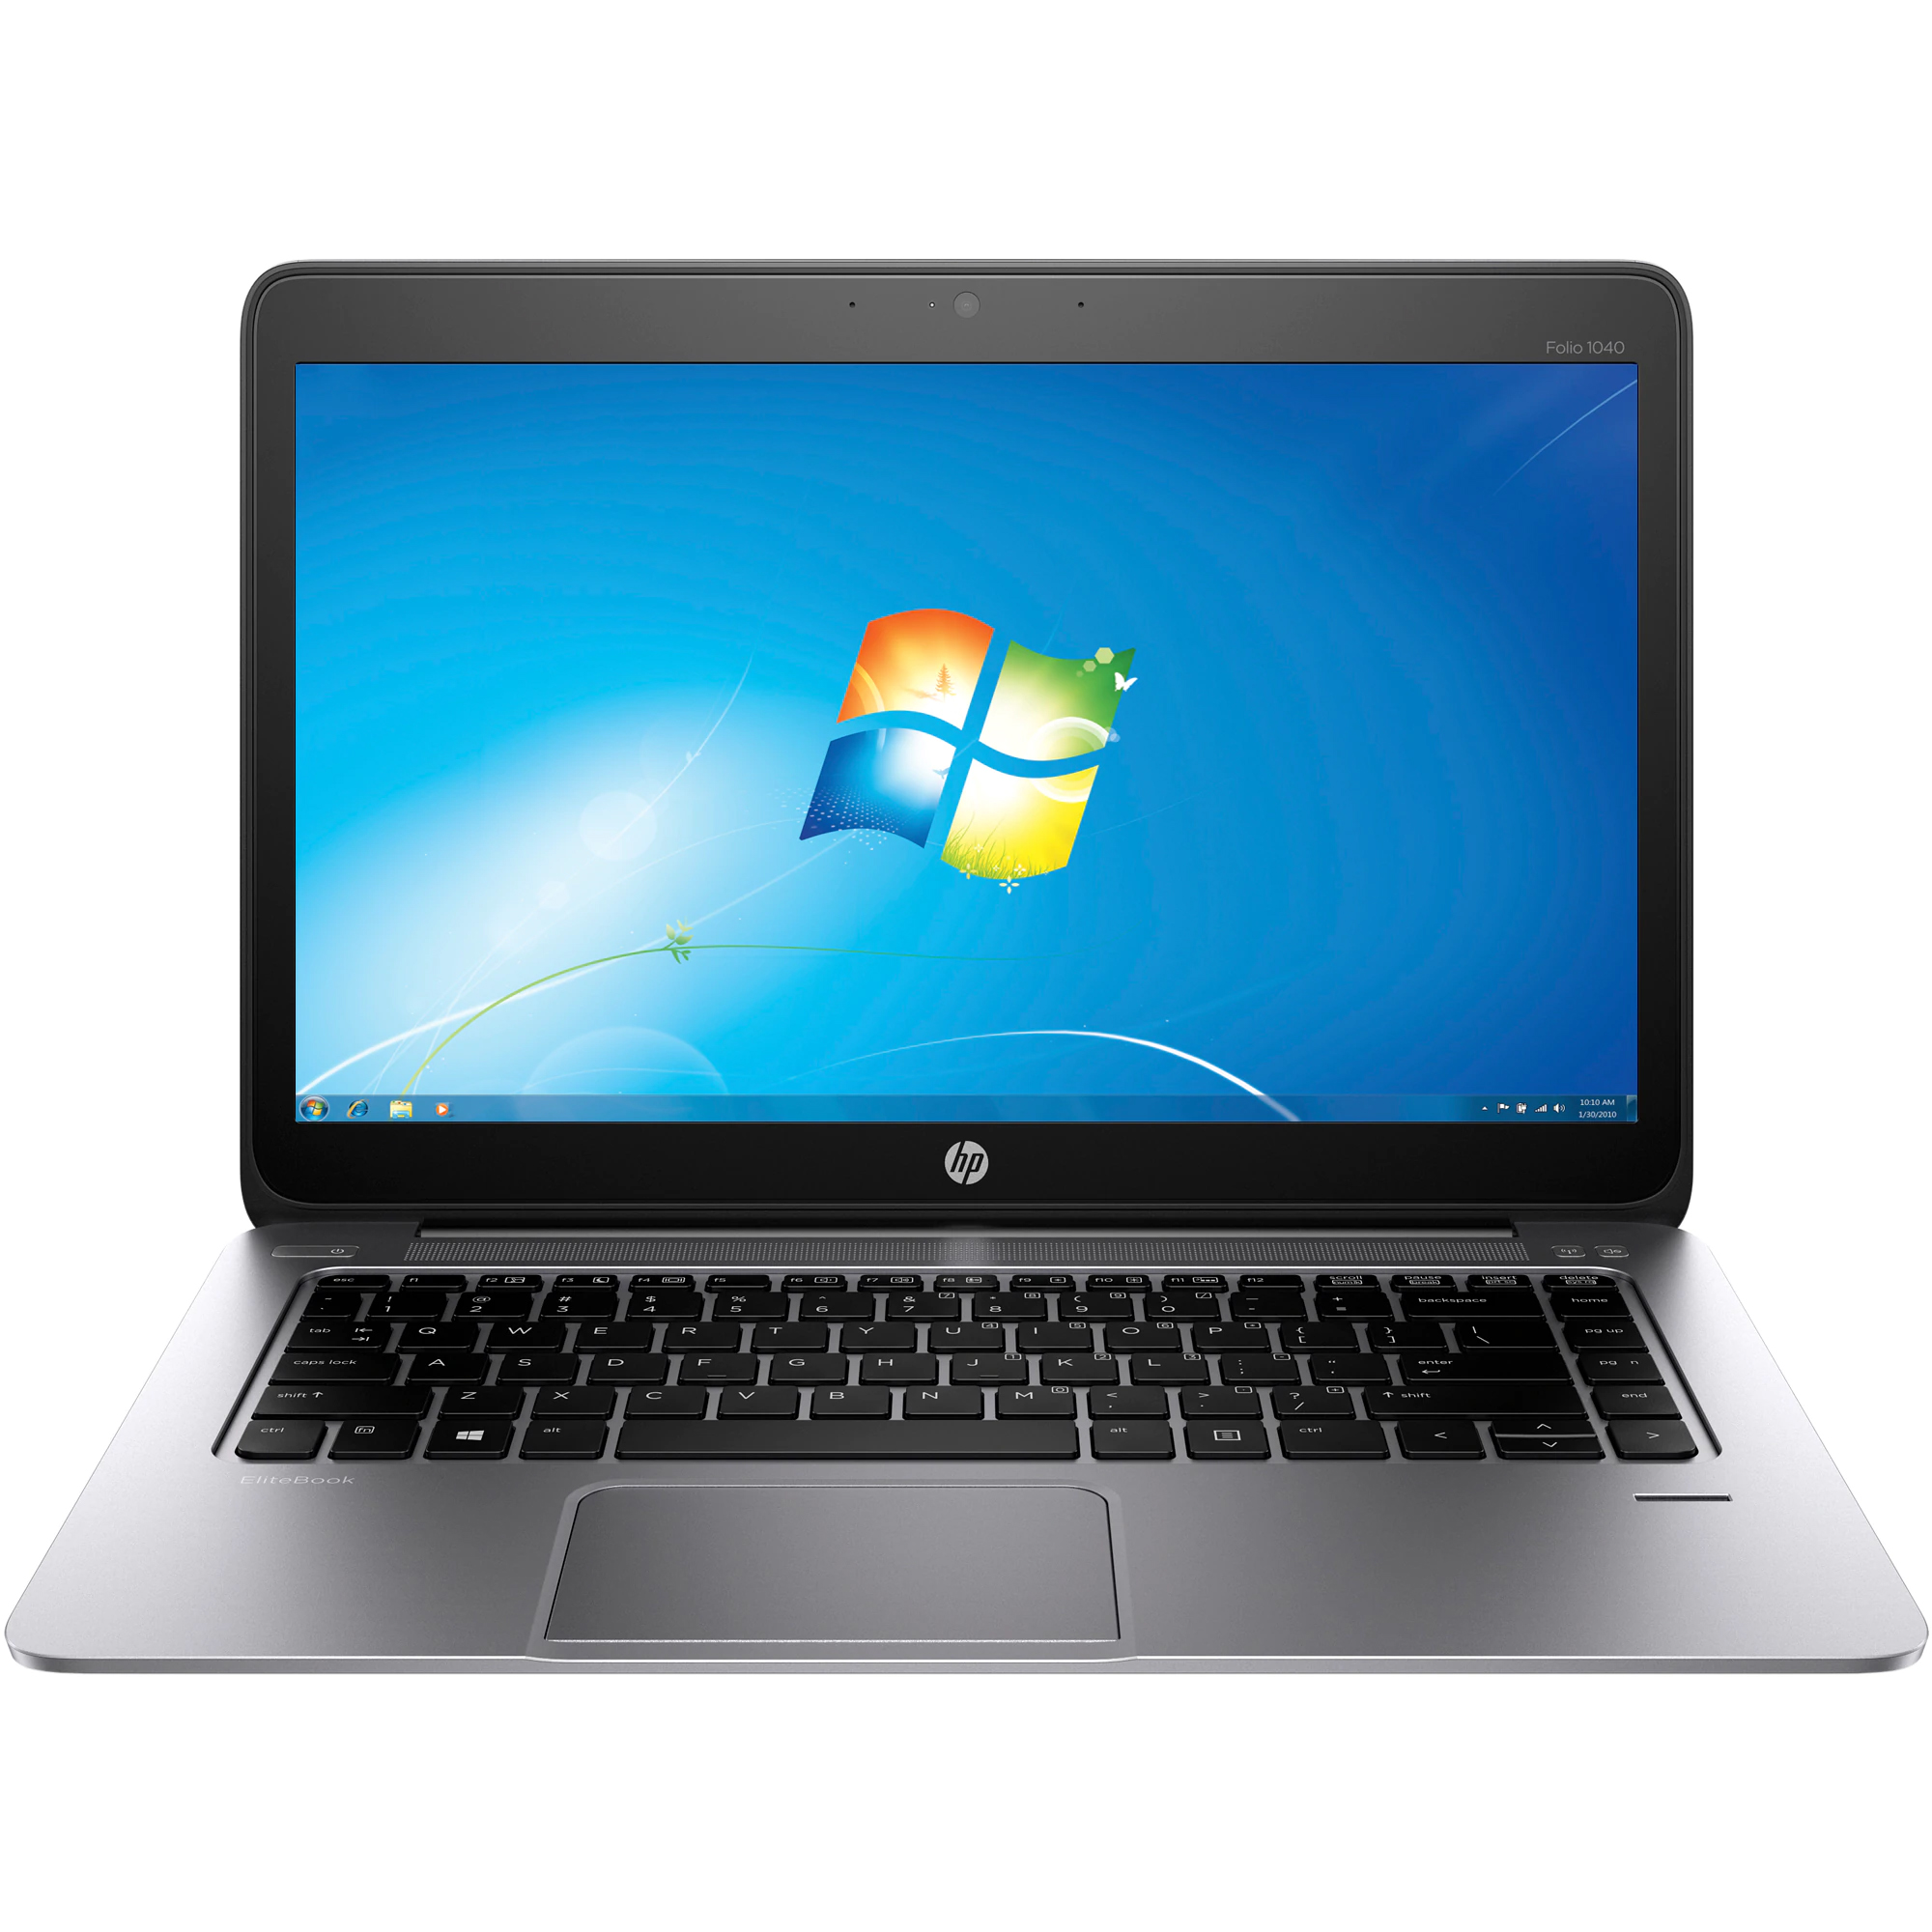 Laptop HP EliteBook Folio 1040 G1, Intel Core i5-4200U 1.60GHz, 8GB DDR3, 120GB SSD, Webcam, 14 Inch